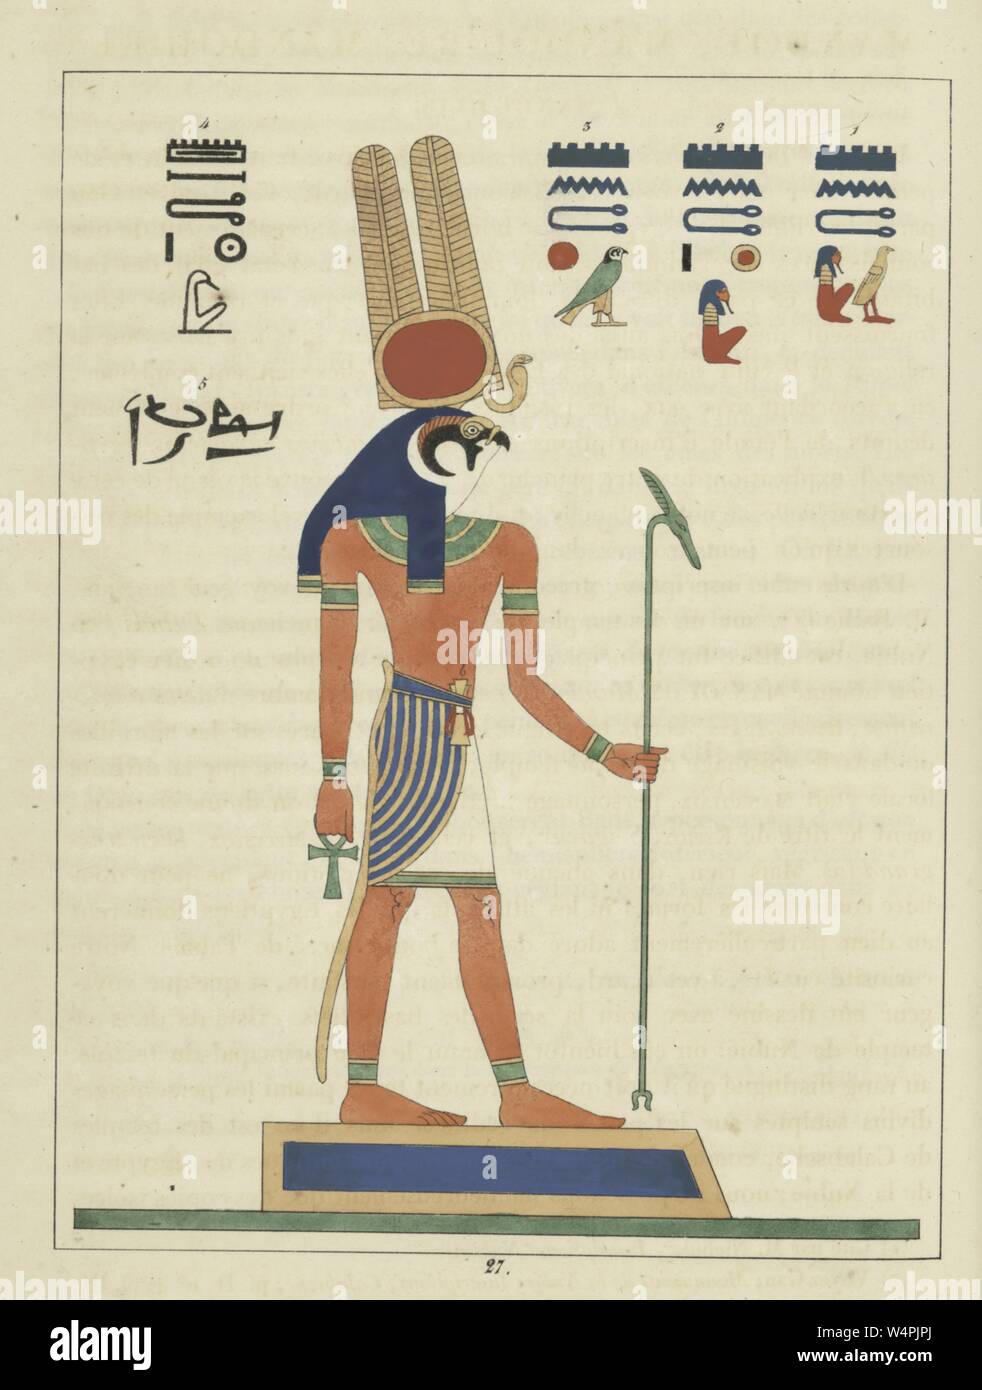 Dieu égyptien ancien Montu, un homme avec la tête d'un faucon tenant l'ankh et le sceptre, le dieu de la guerre, illustration du livre 'panthéon égyptien' par Léon Jean Joseph Dubois, 1824. () Banque D'Images